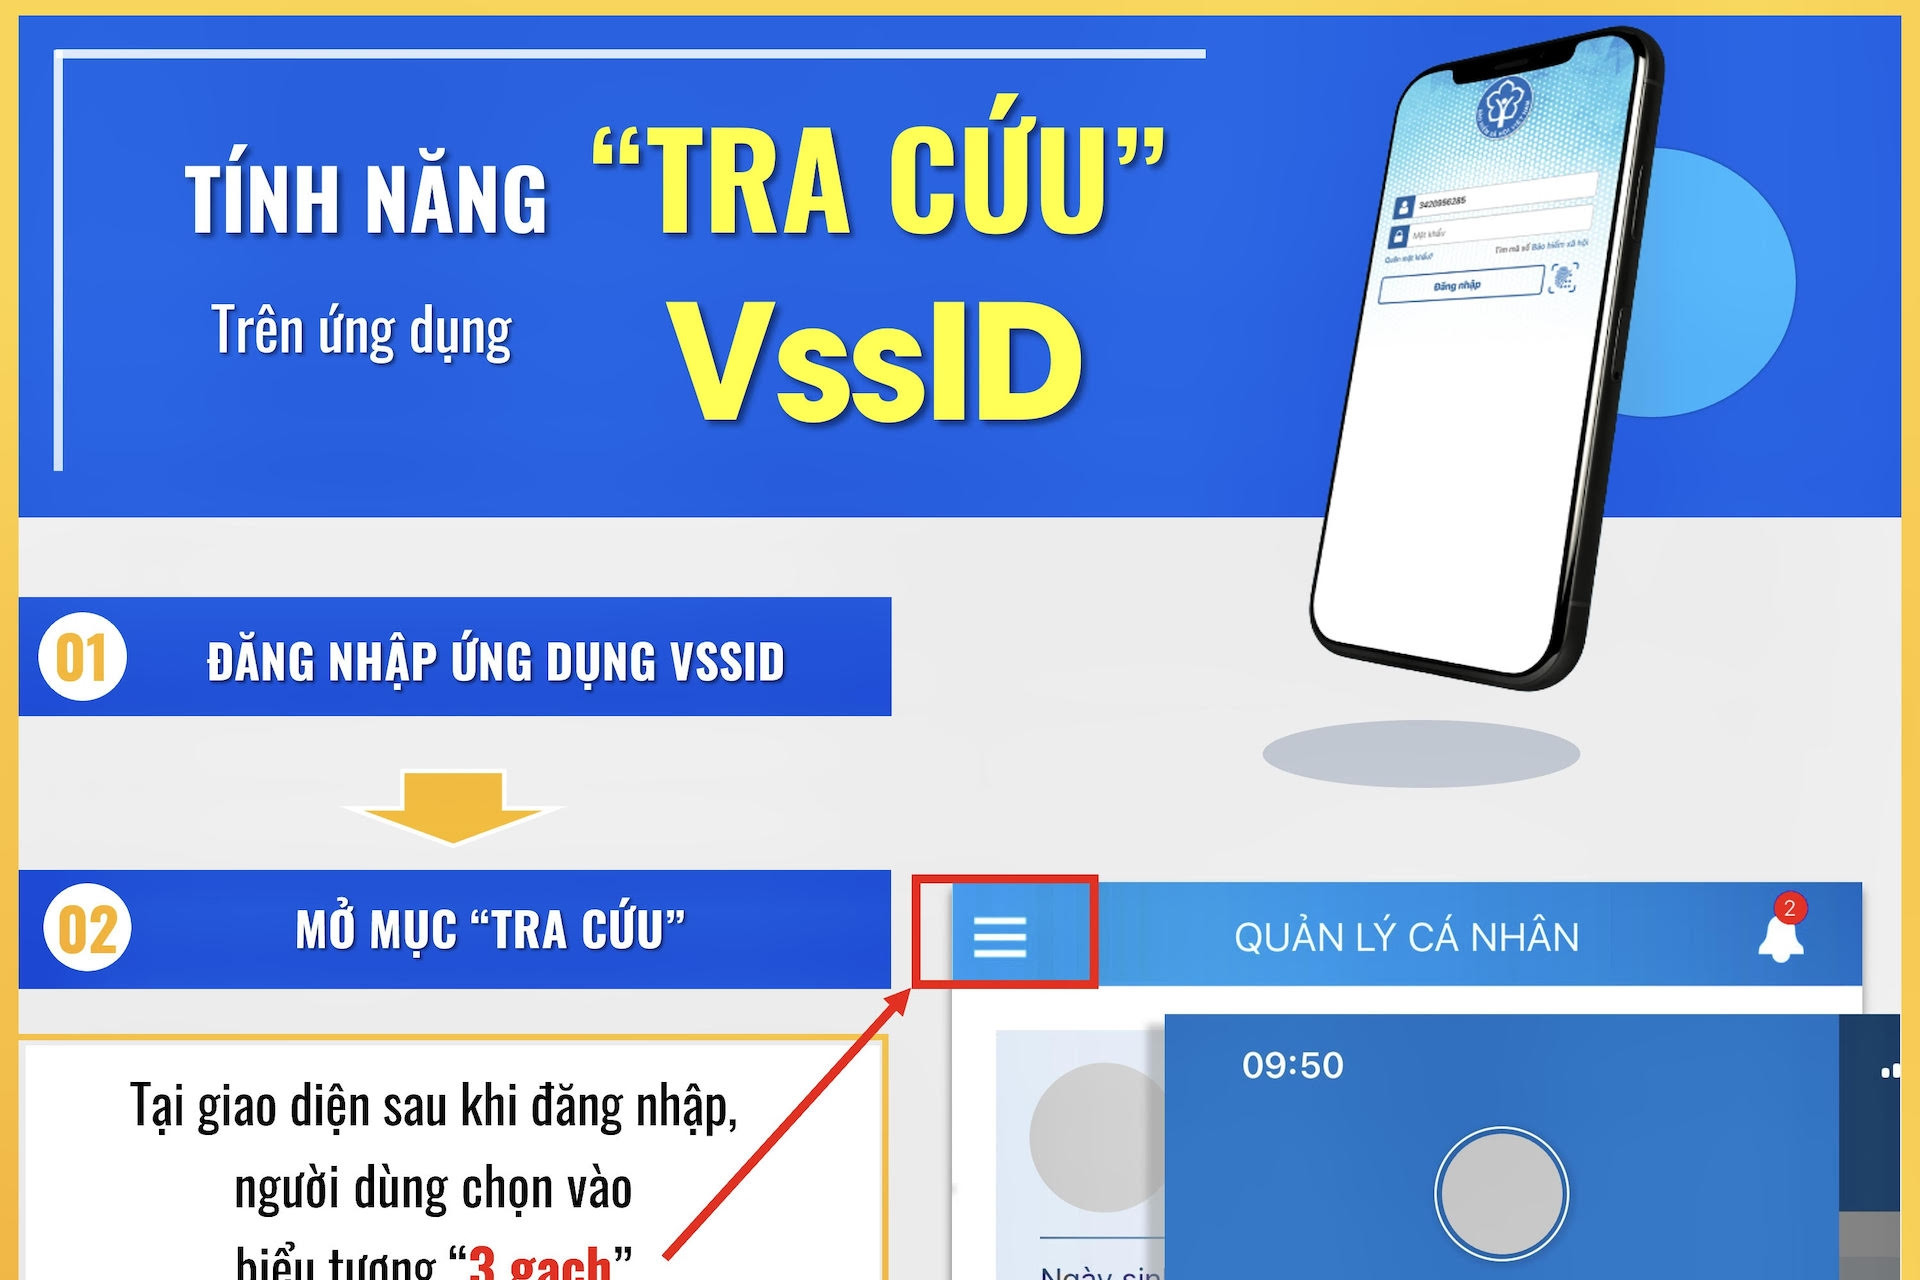 Bảo hiểm xã hội Việt Nam hướng dẫn tính năng tra cứu trên ứng dụng VssID